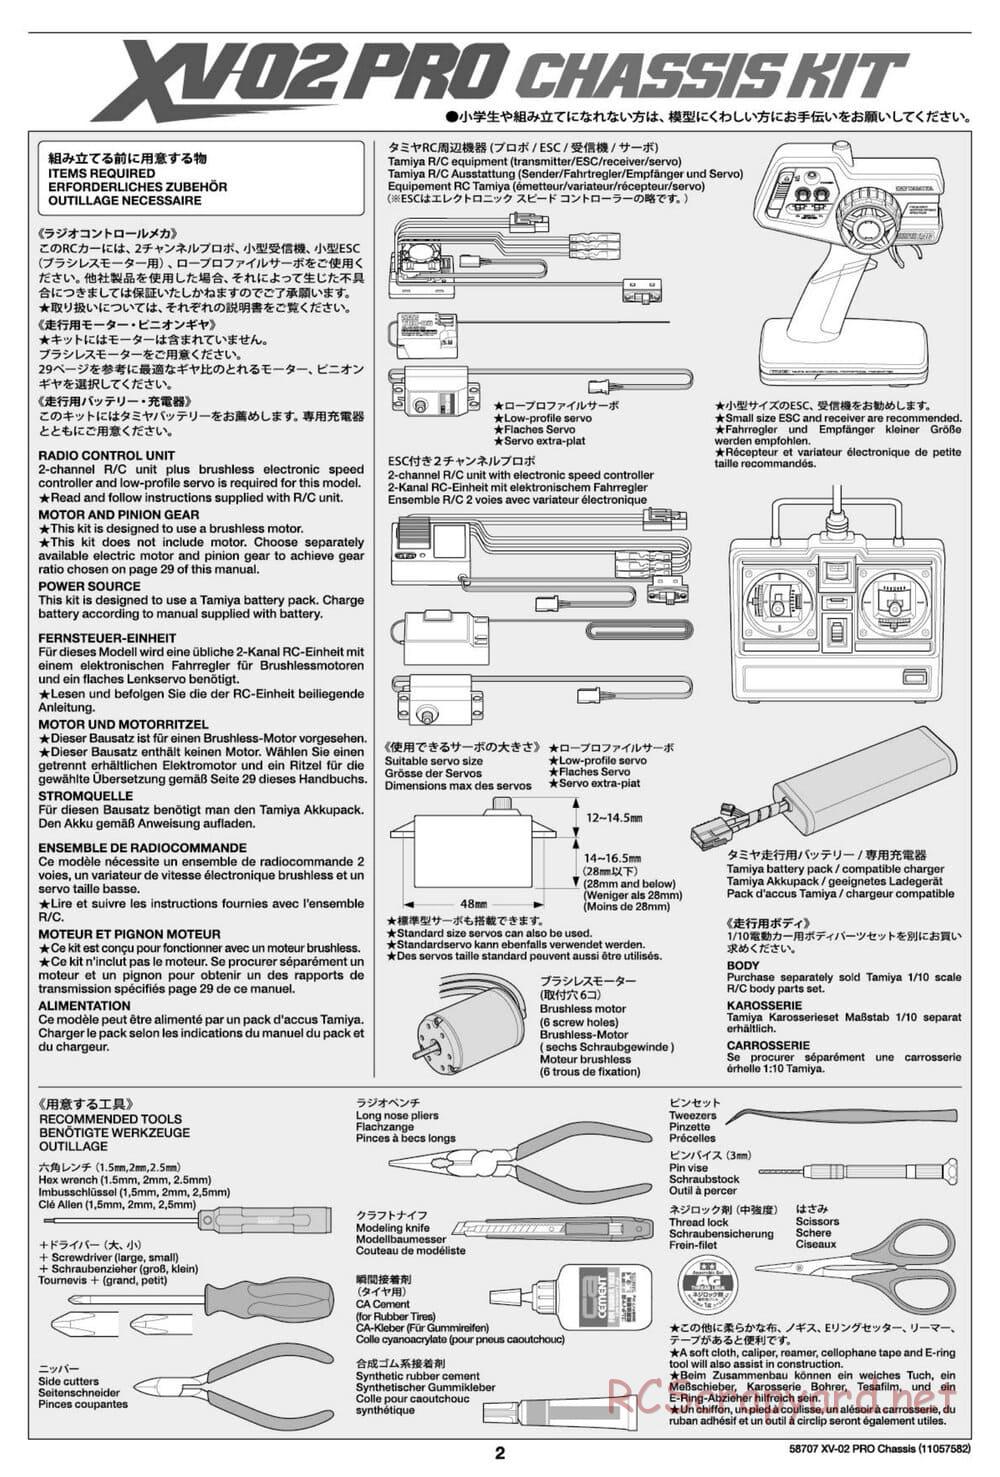 Tamiya - XV-02 Pro Chassis - Manual - Page 2